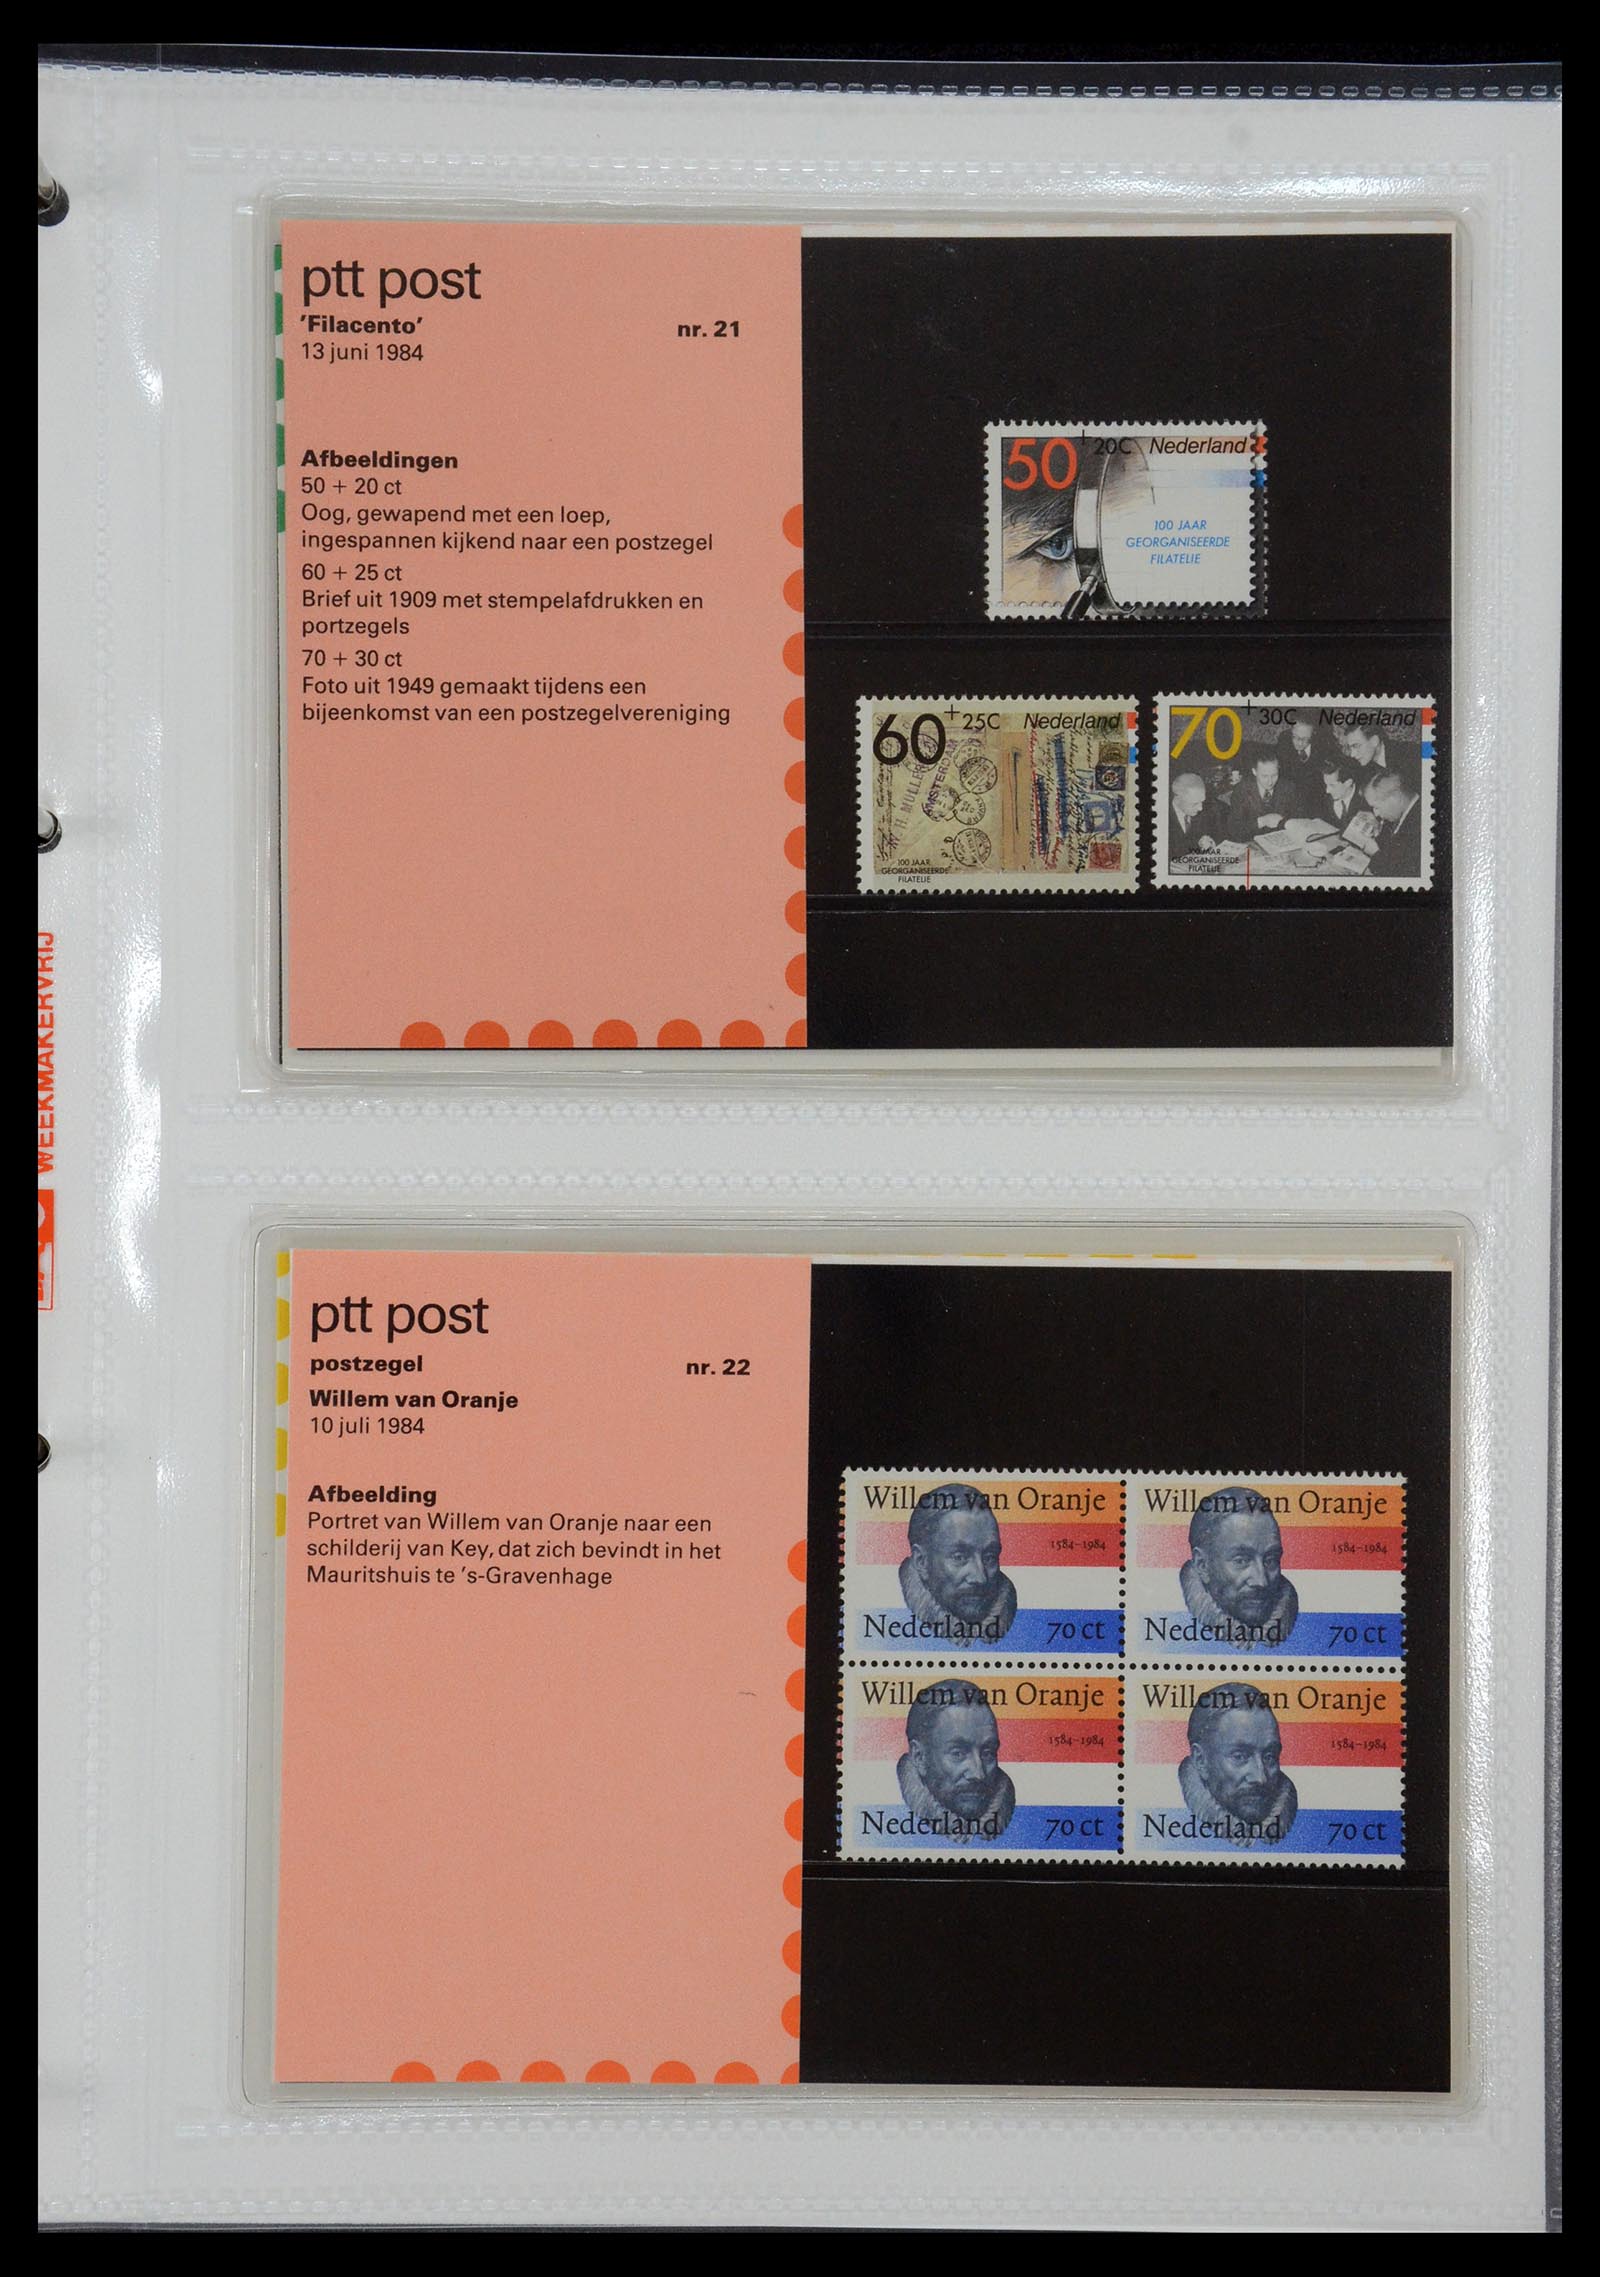 35144 011 - Stamp Collection 35144 Netherlands PTT presentation packs 1982-2021!